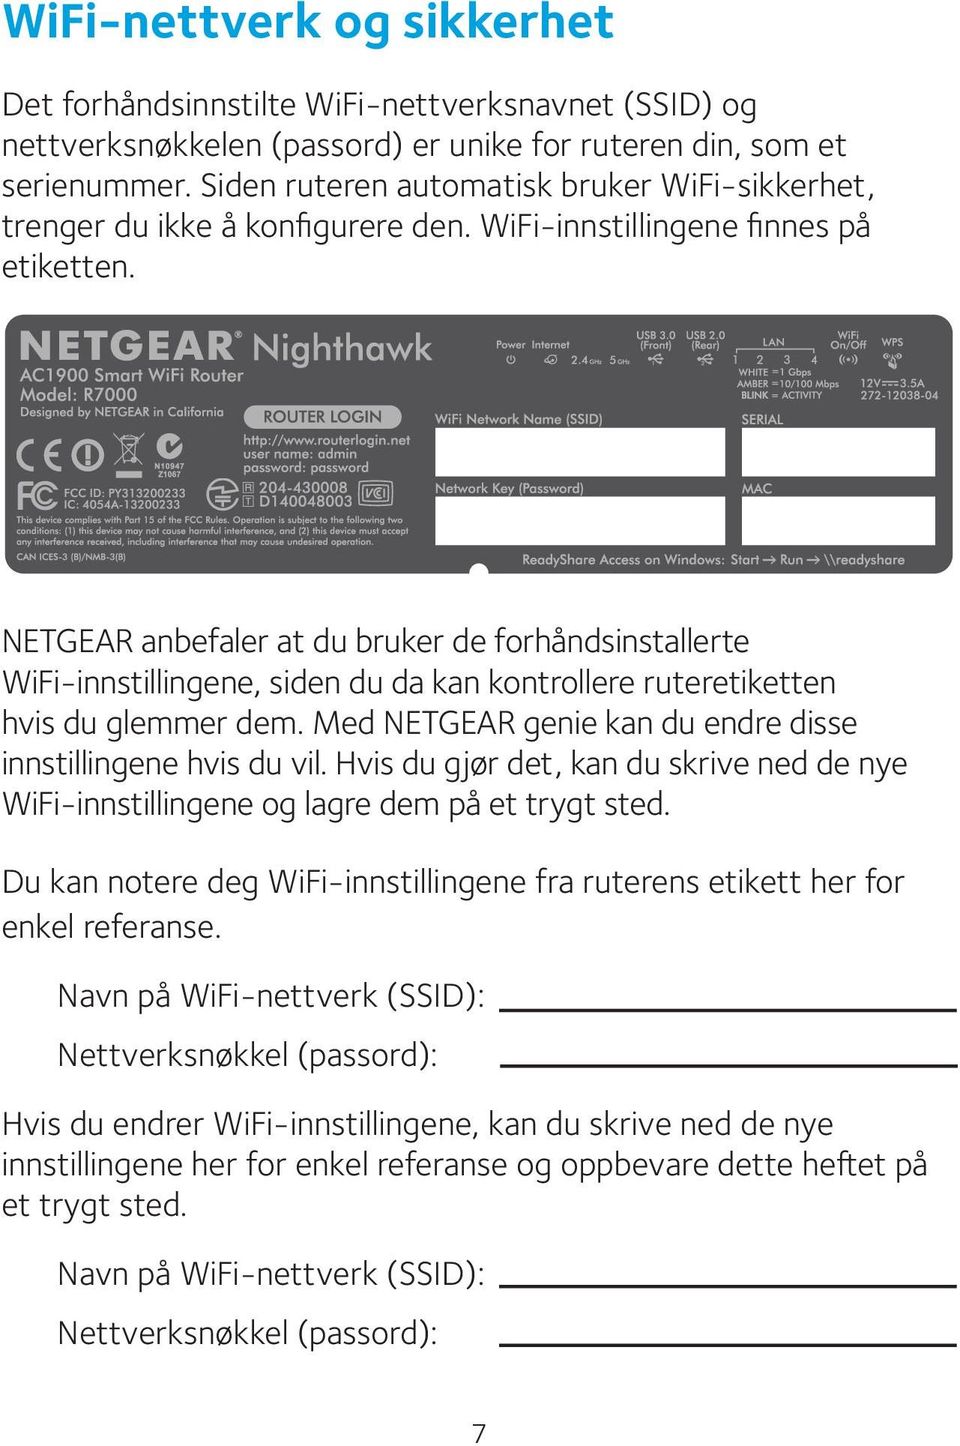 NETGEAR anbefaler at du bruker de forhåndsinstallerte WiFi-innstillingene, siden du da kan kontrollere ruteretiketten hvis du glemmer dem.